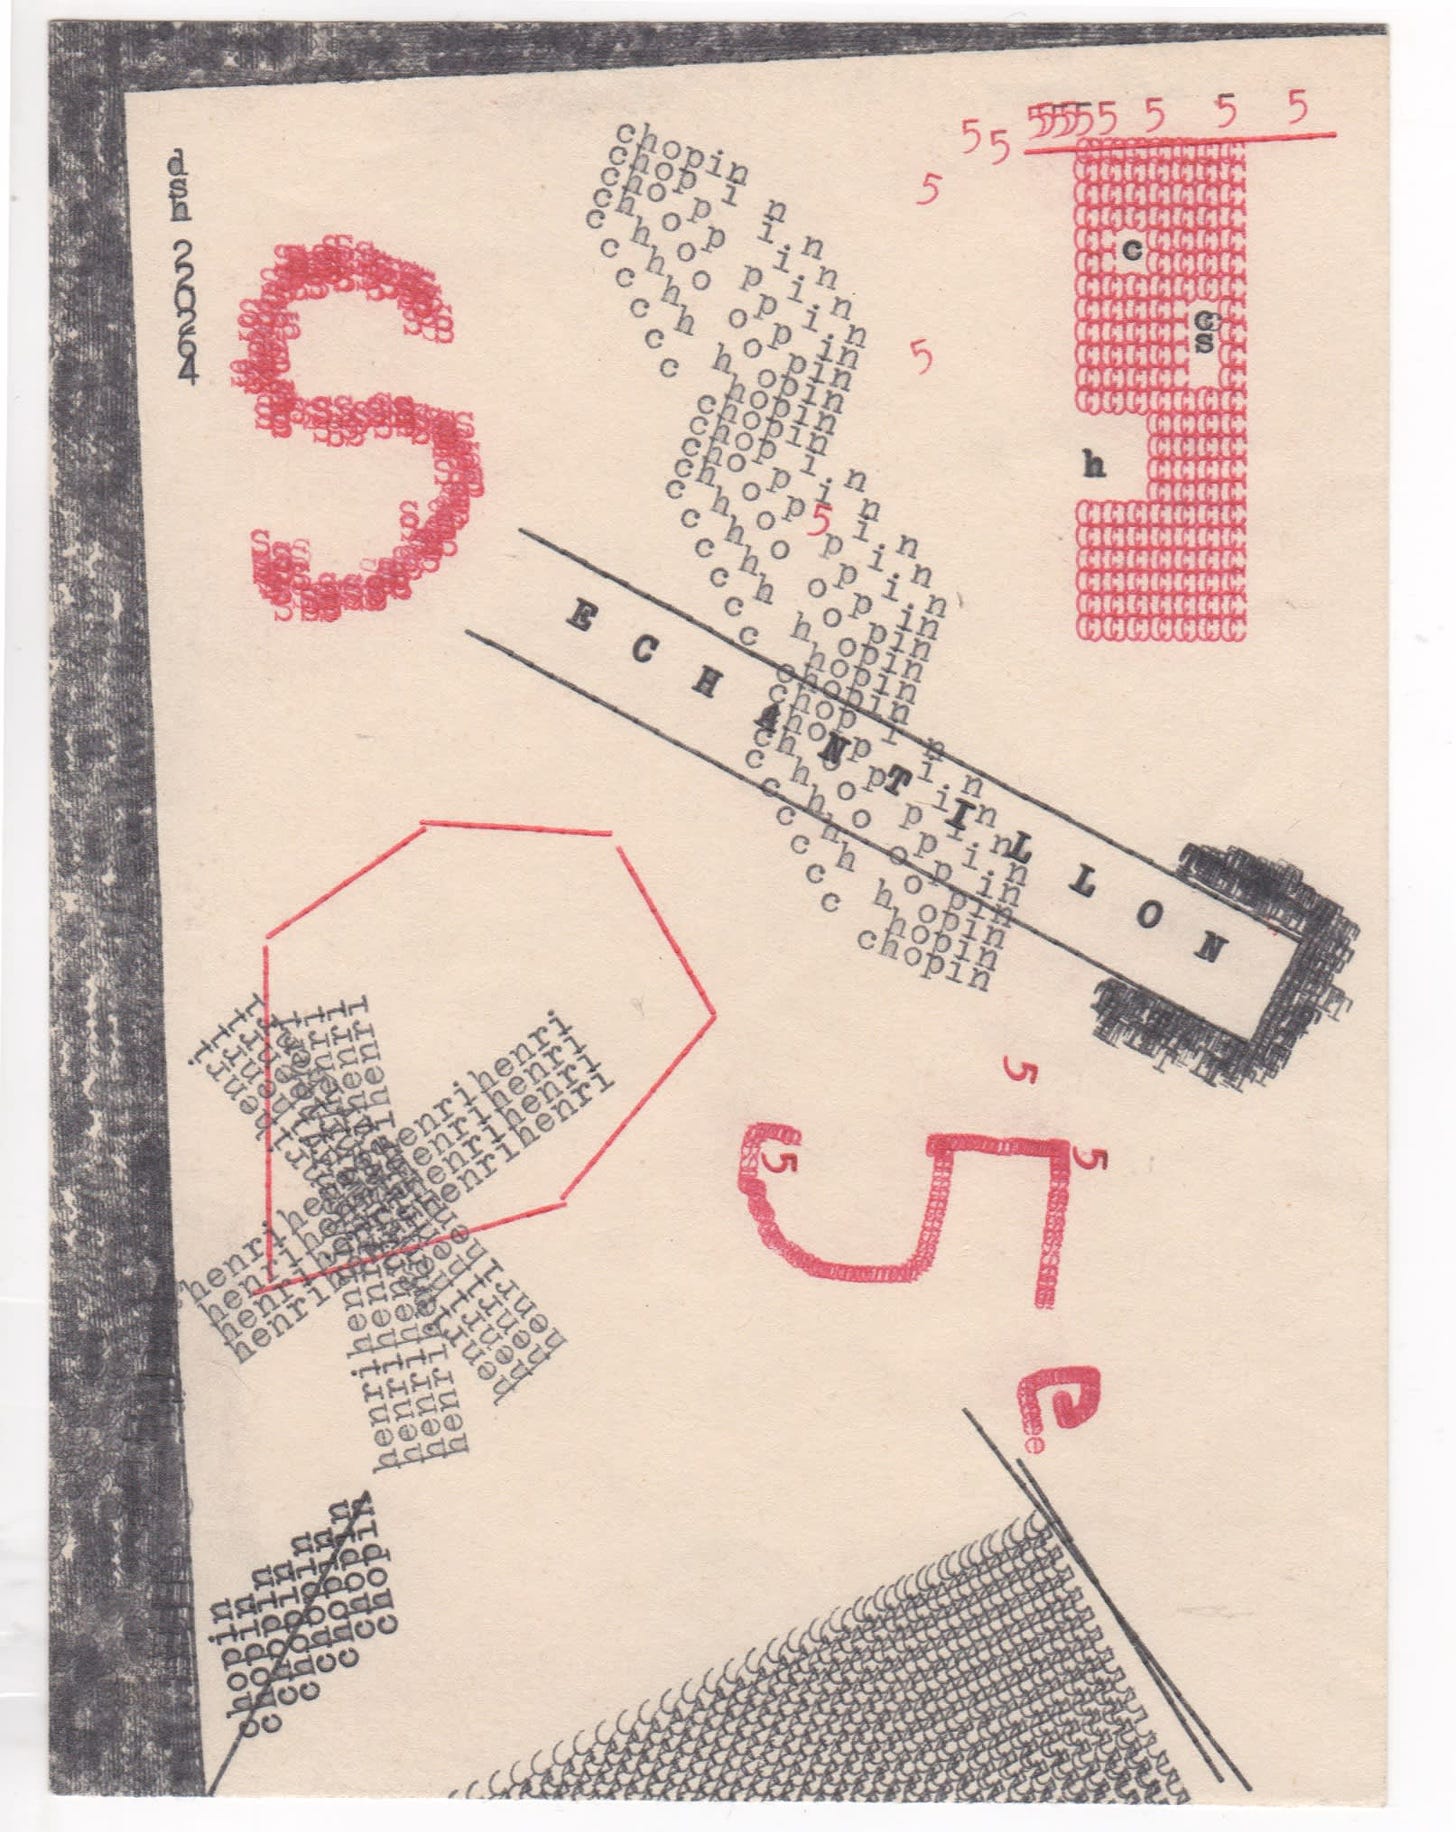 Dom Sylvester HOUEDARD, Enchantillon, 1964 | Richard Saltoun